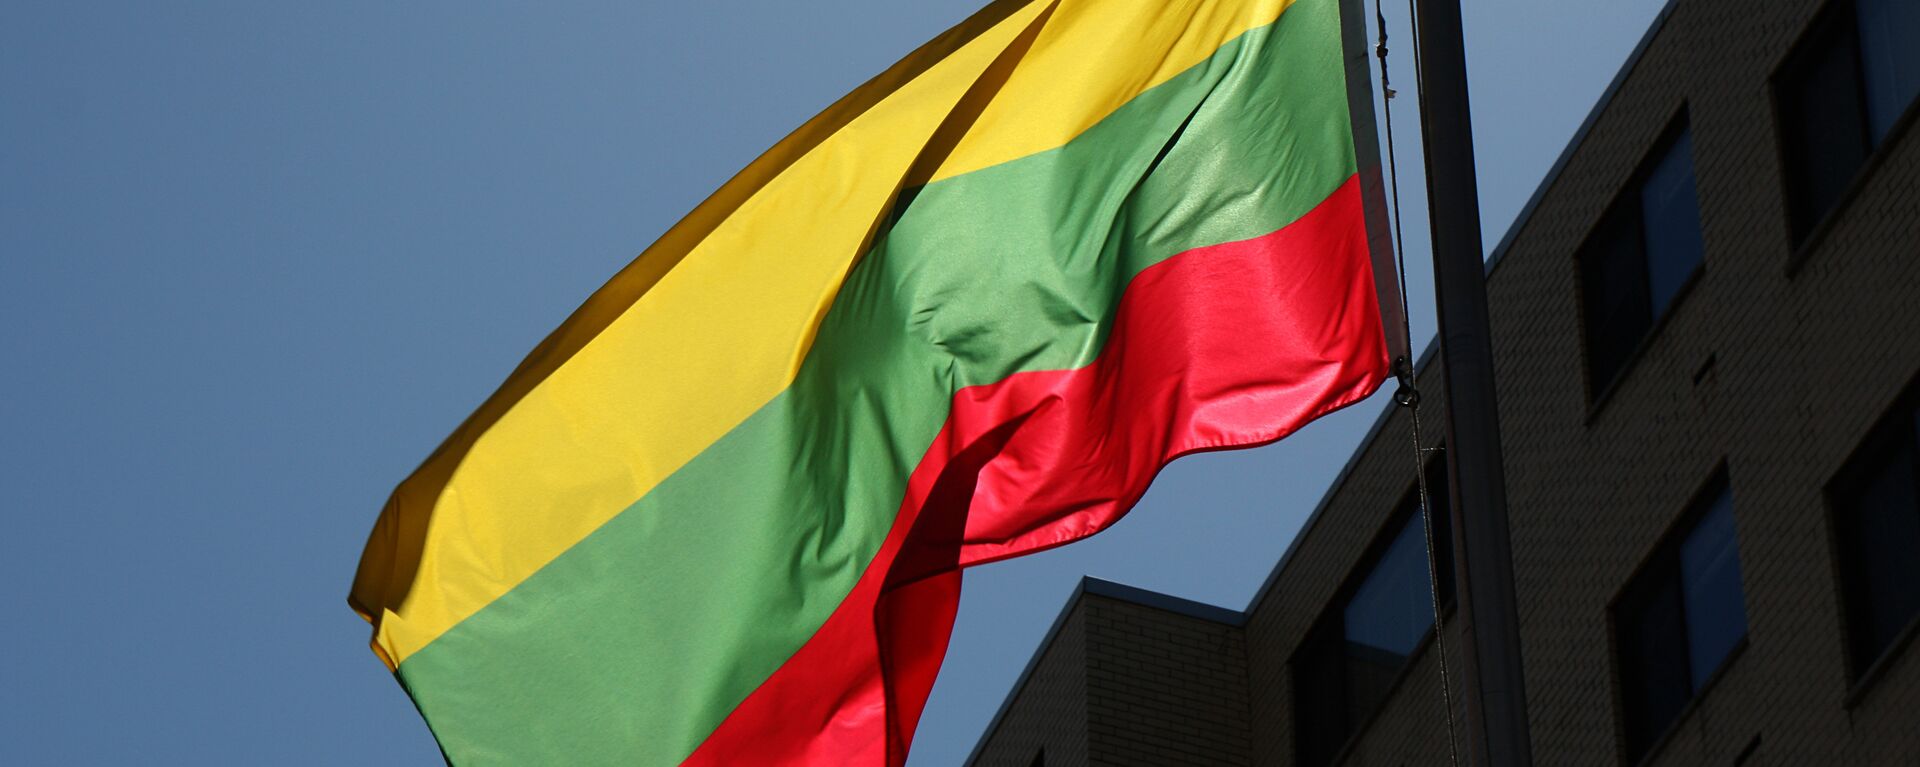 Bandera de Lituania - Sputnik Mundo, 1920, 03.12.2021